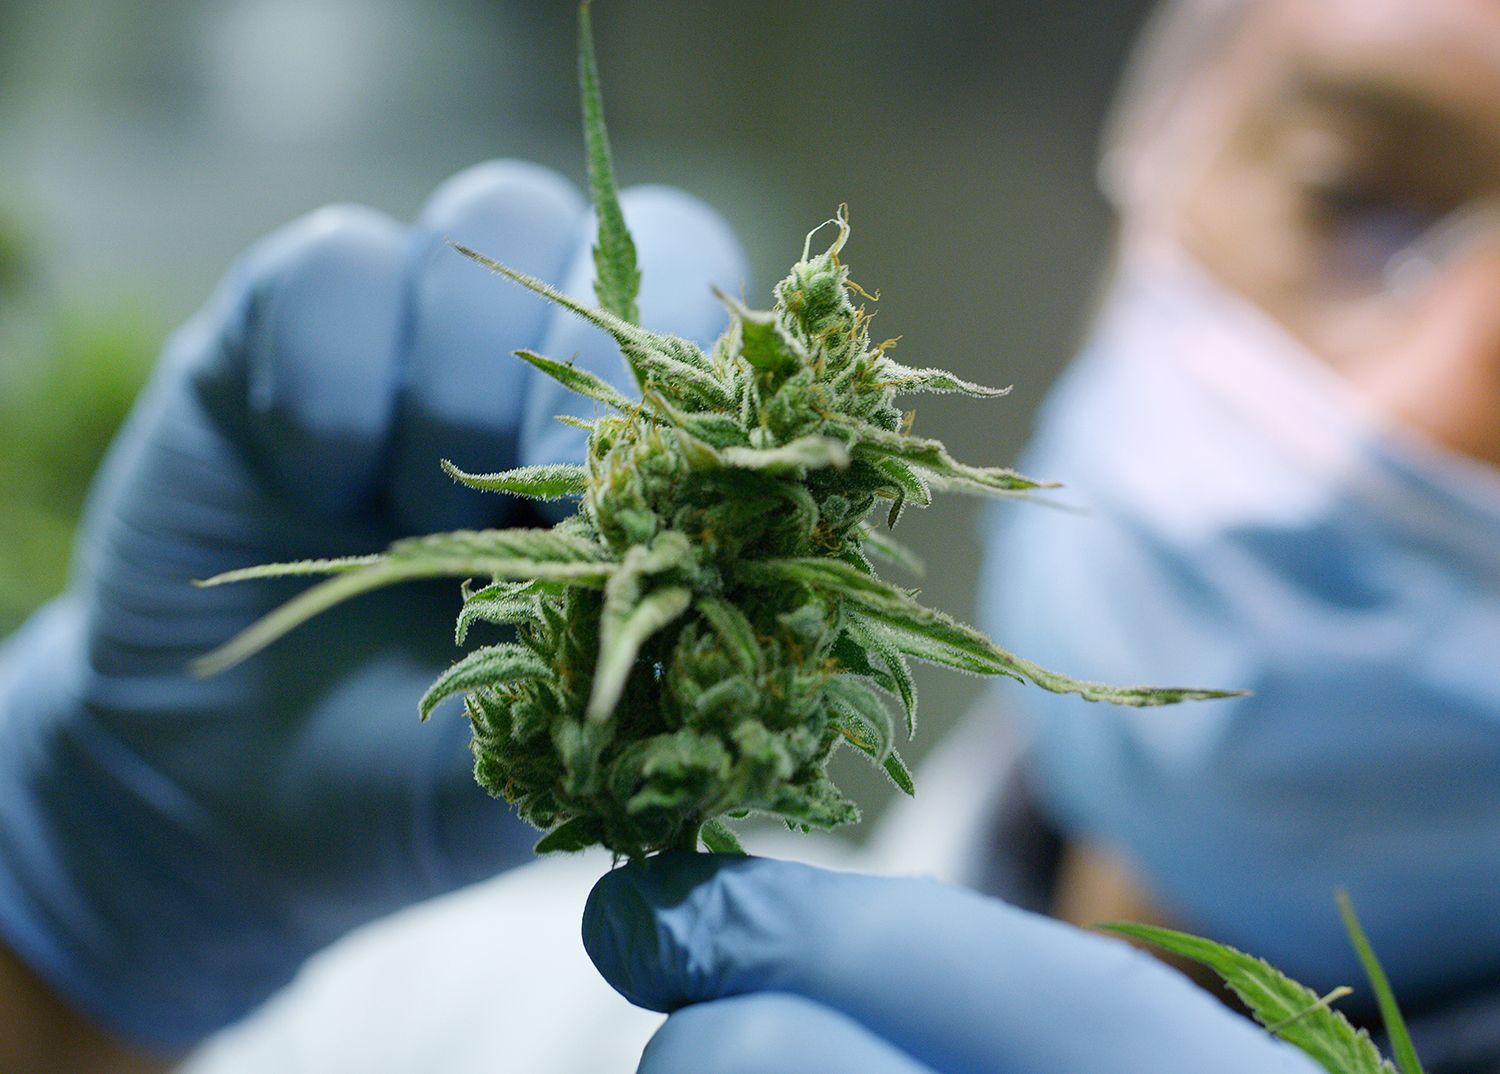 grow room employee examining cannabis